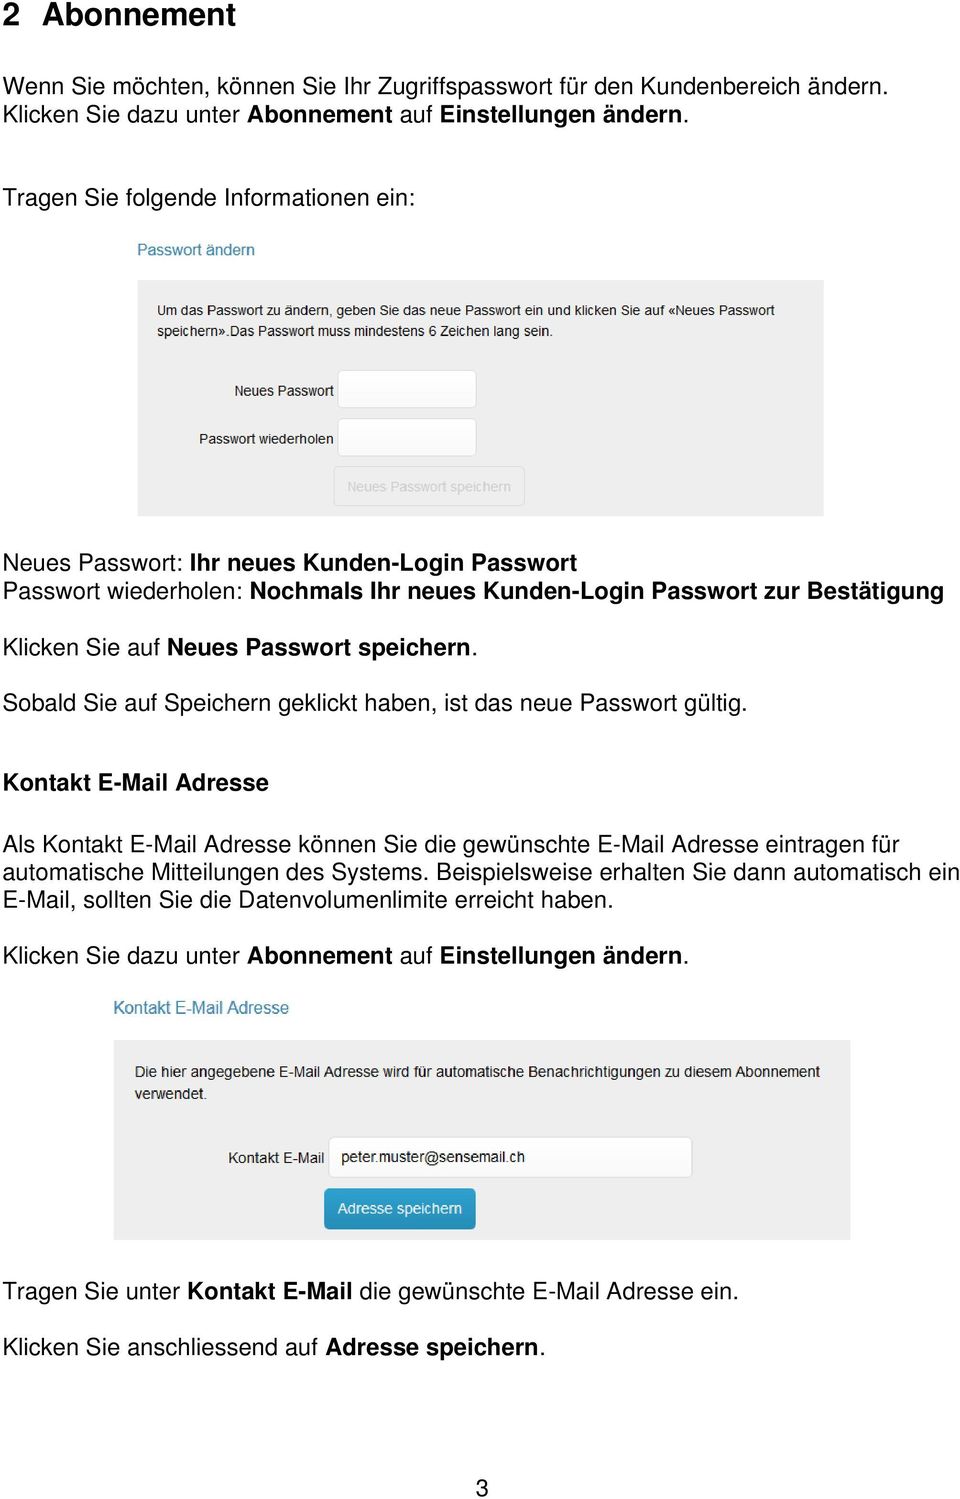 speichern. Sobald Sie auf Speichern geklickt haben, ist das neue Passwort gültig.